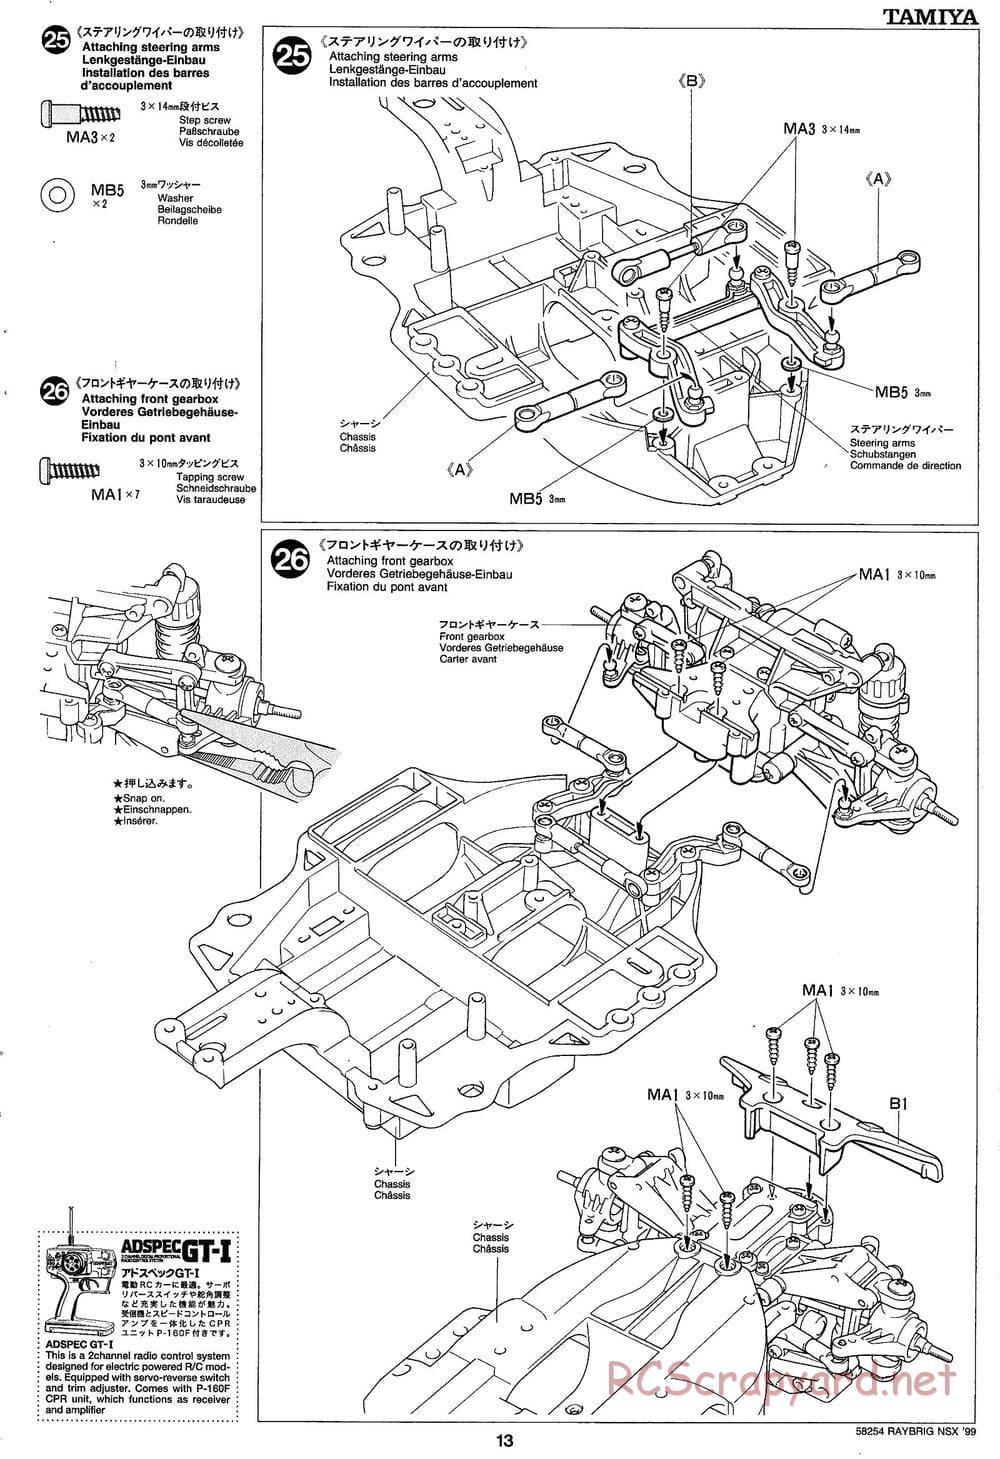 Tamiya - Raybrig NSX 99 - TA-03R Chassis - Manual - Page 13